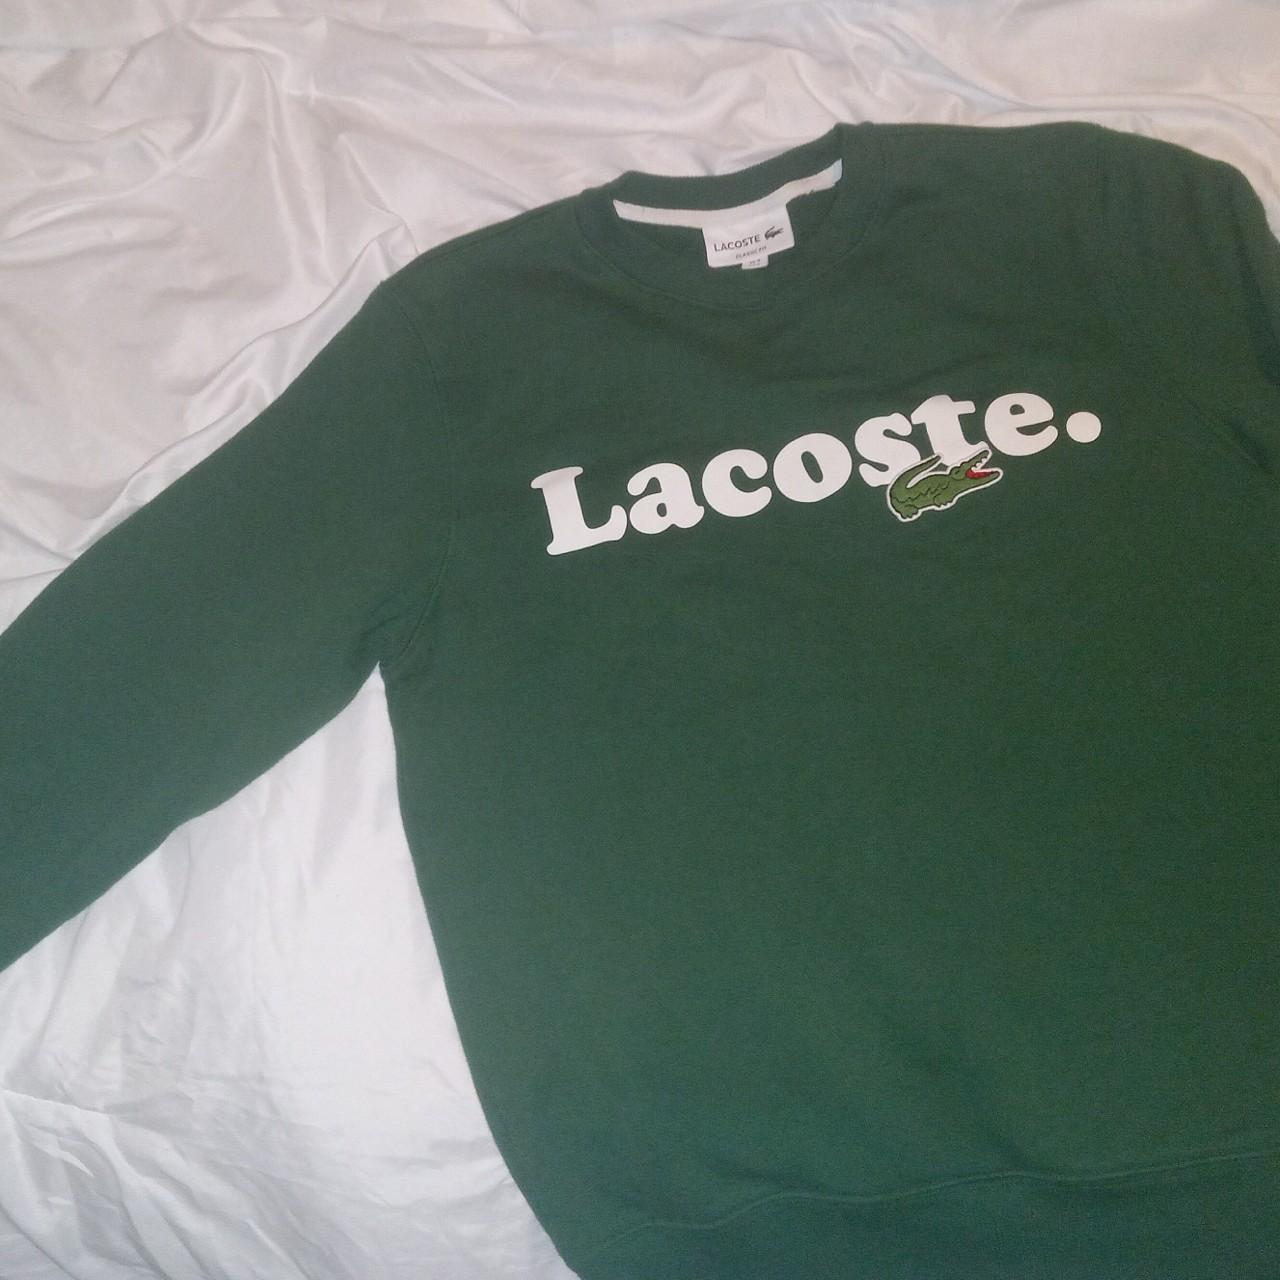 Lacoste Sweatshirt Like new Men's small Willing to... - Depop